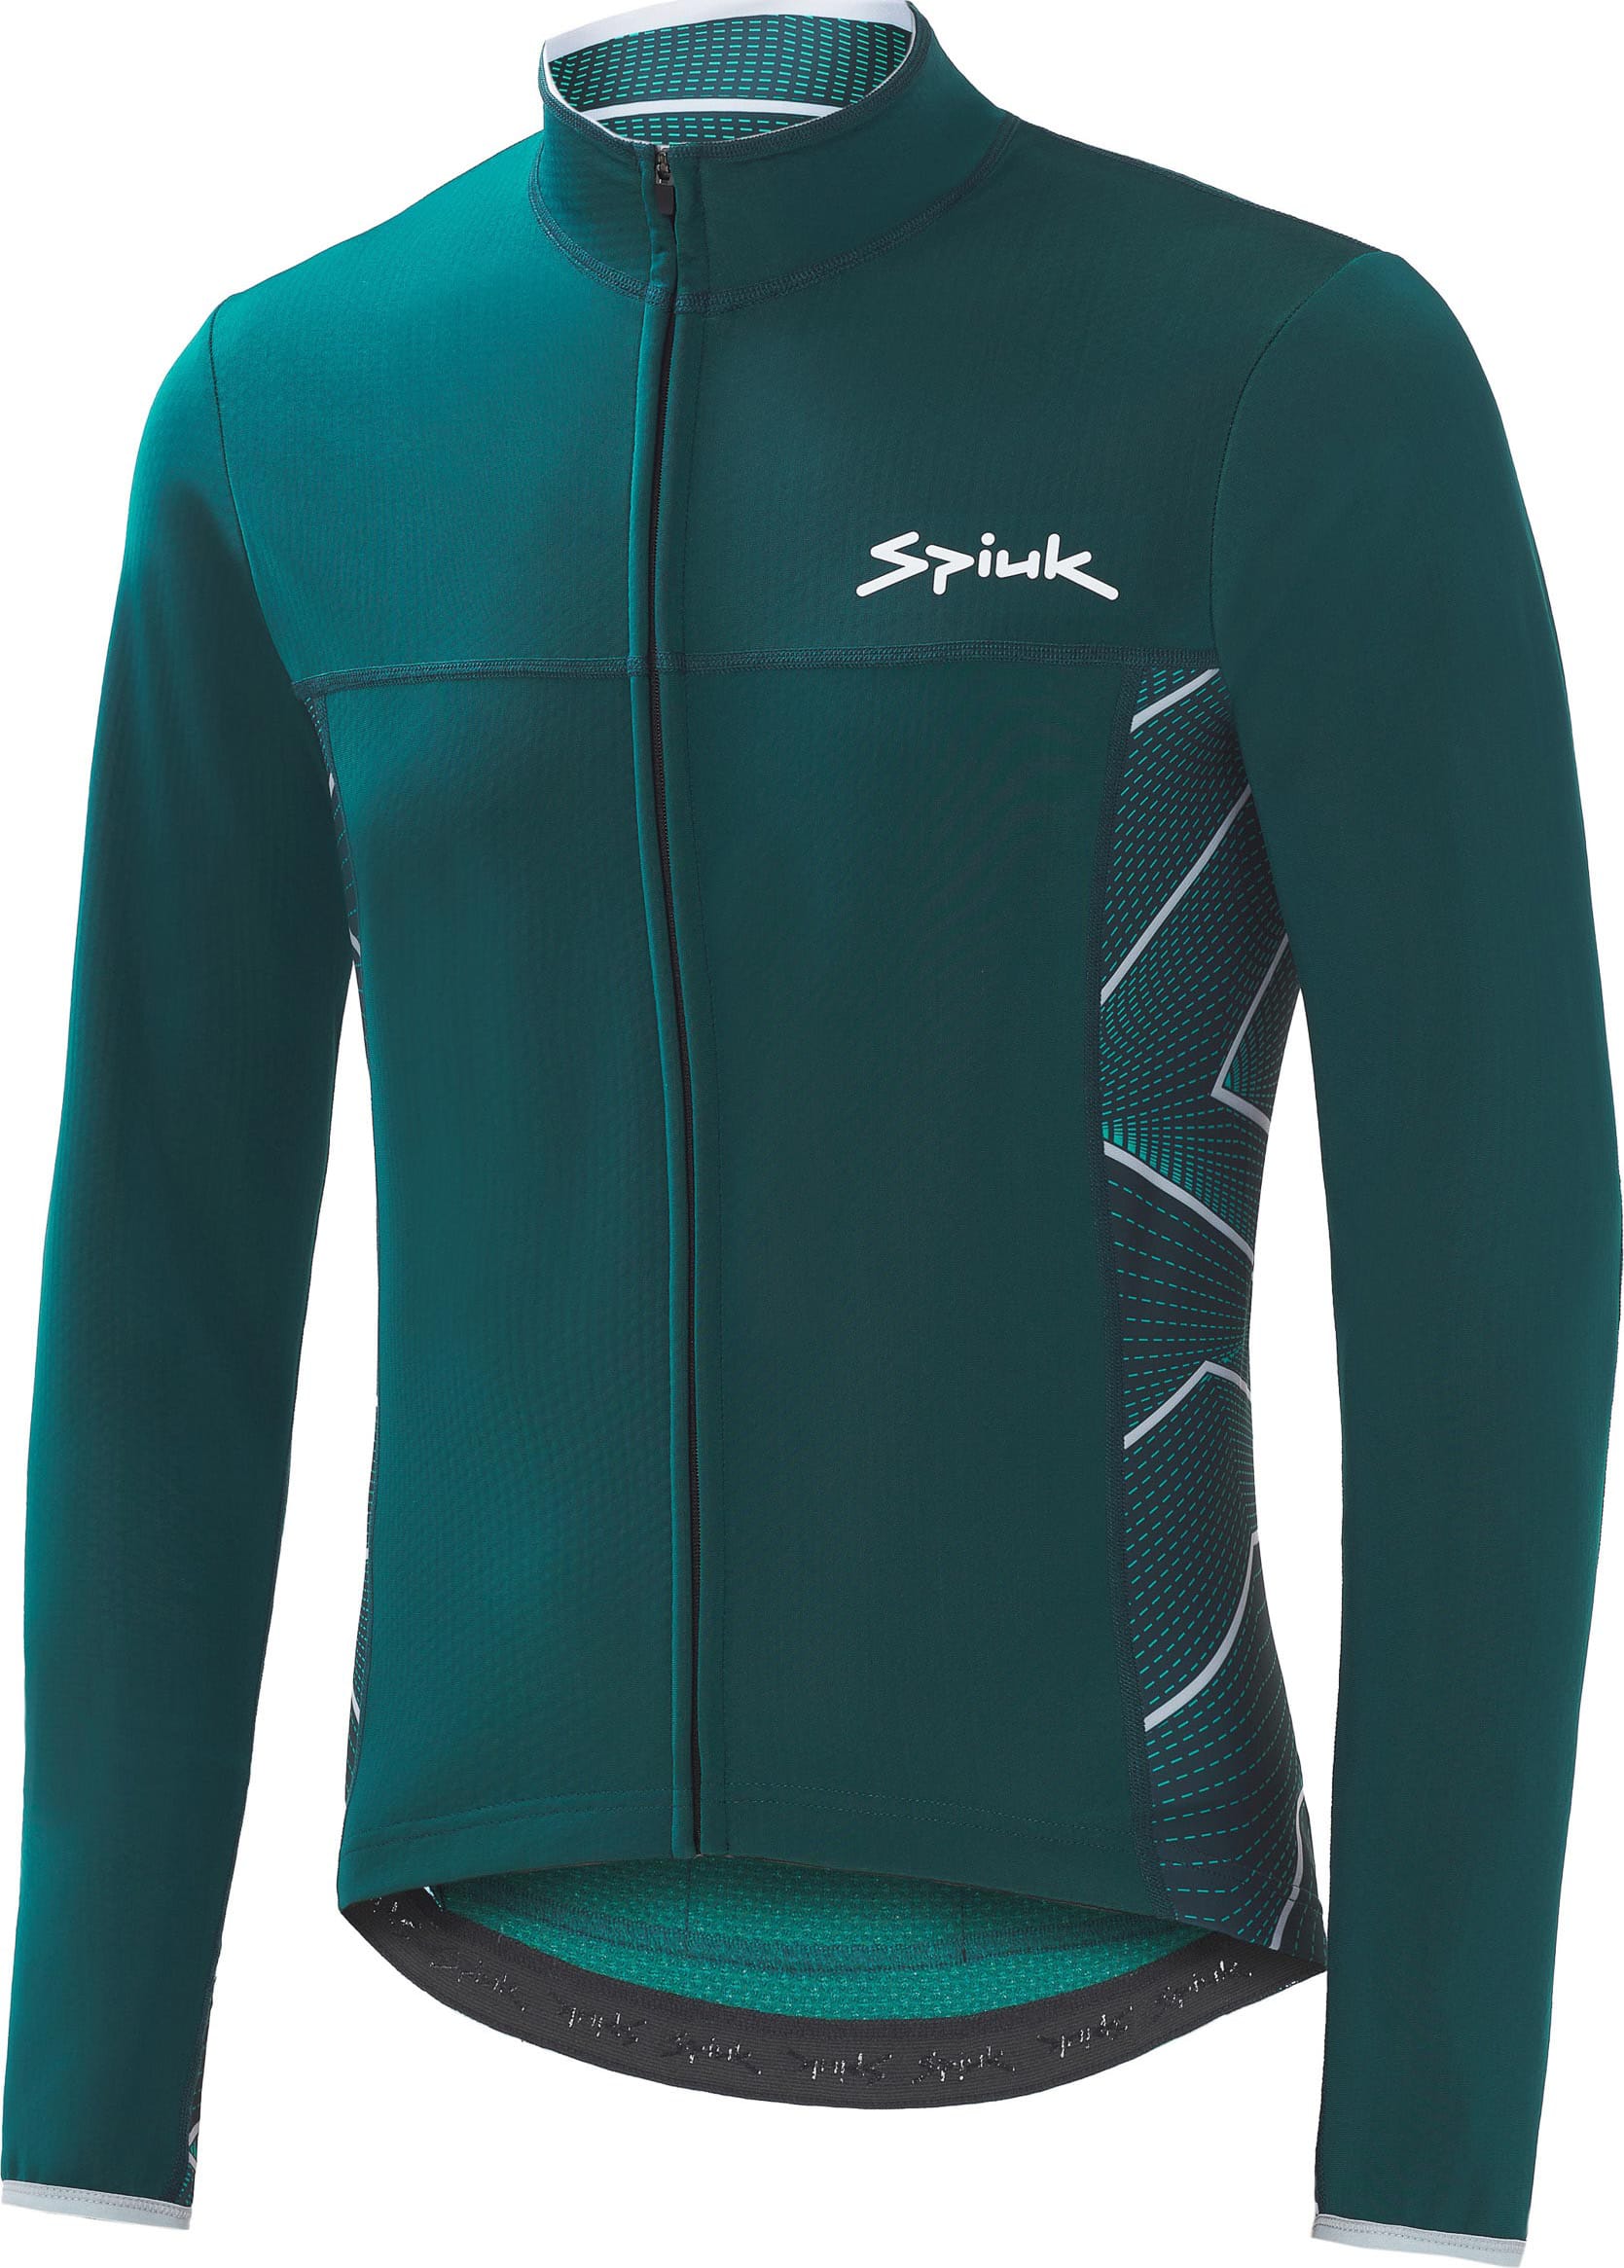 Куртка Spiuk Boreas Light Membrane мужская зеленая S